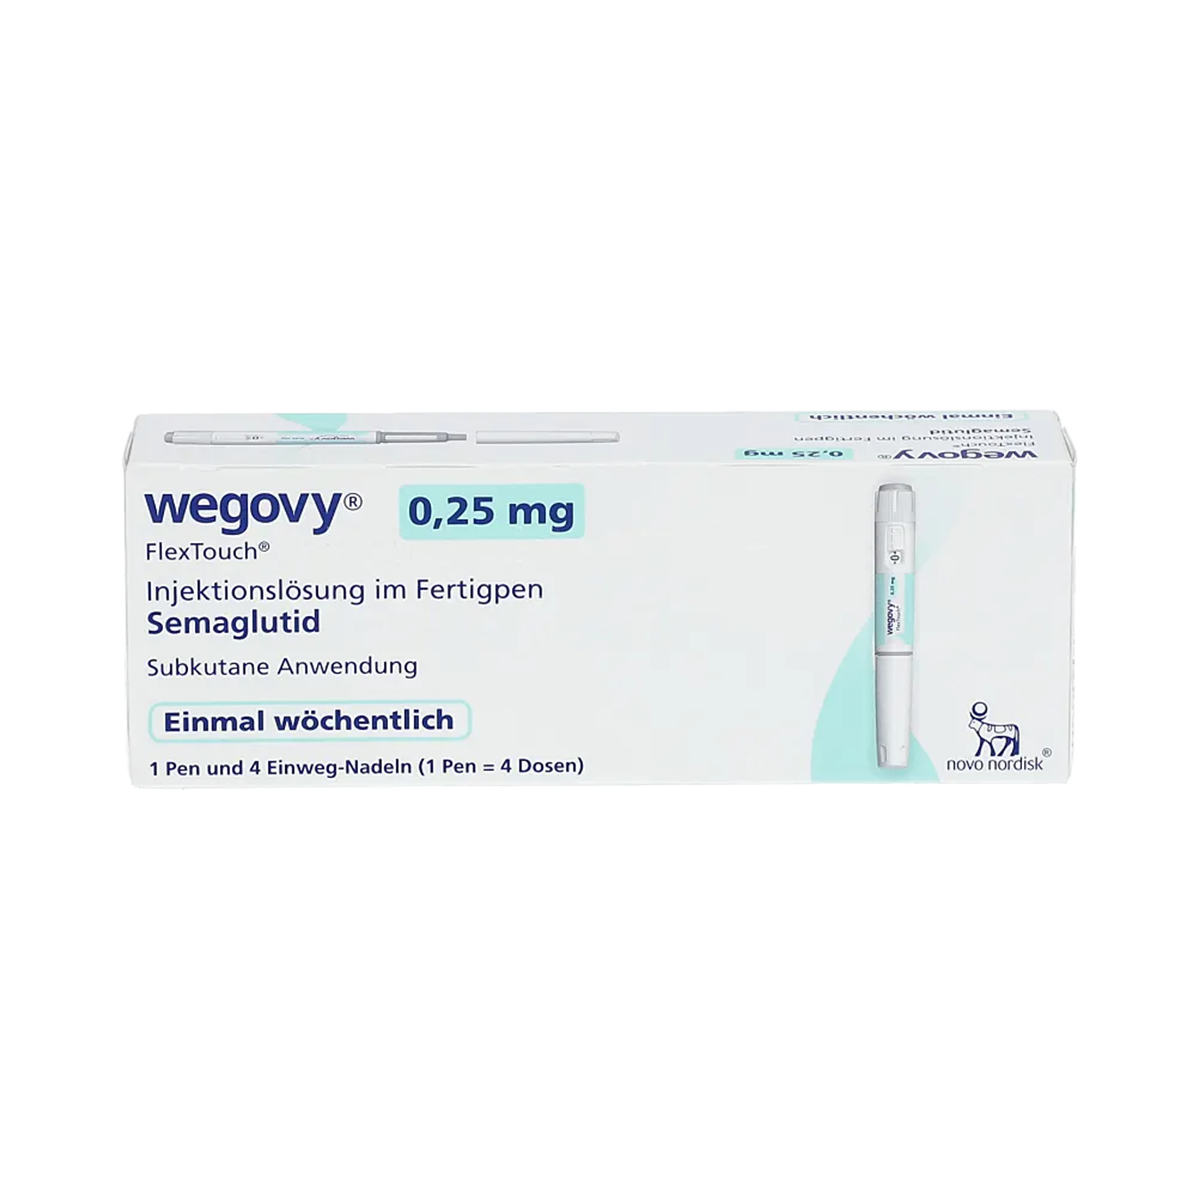 Wegovy 0.25 mg